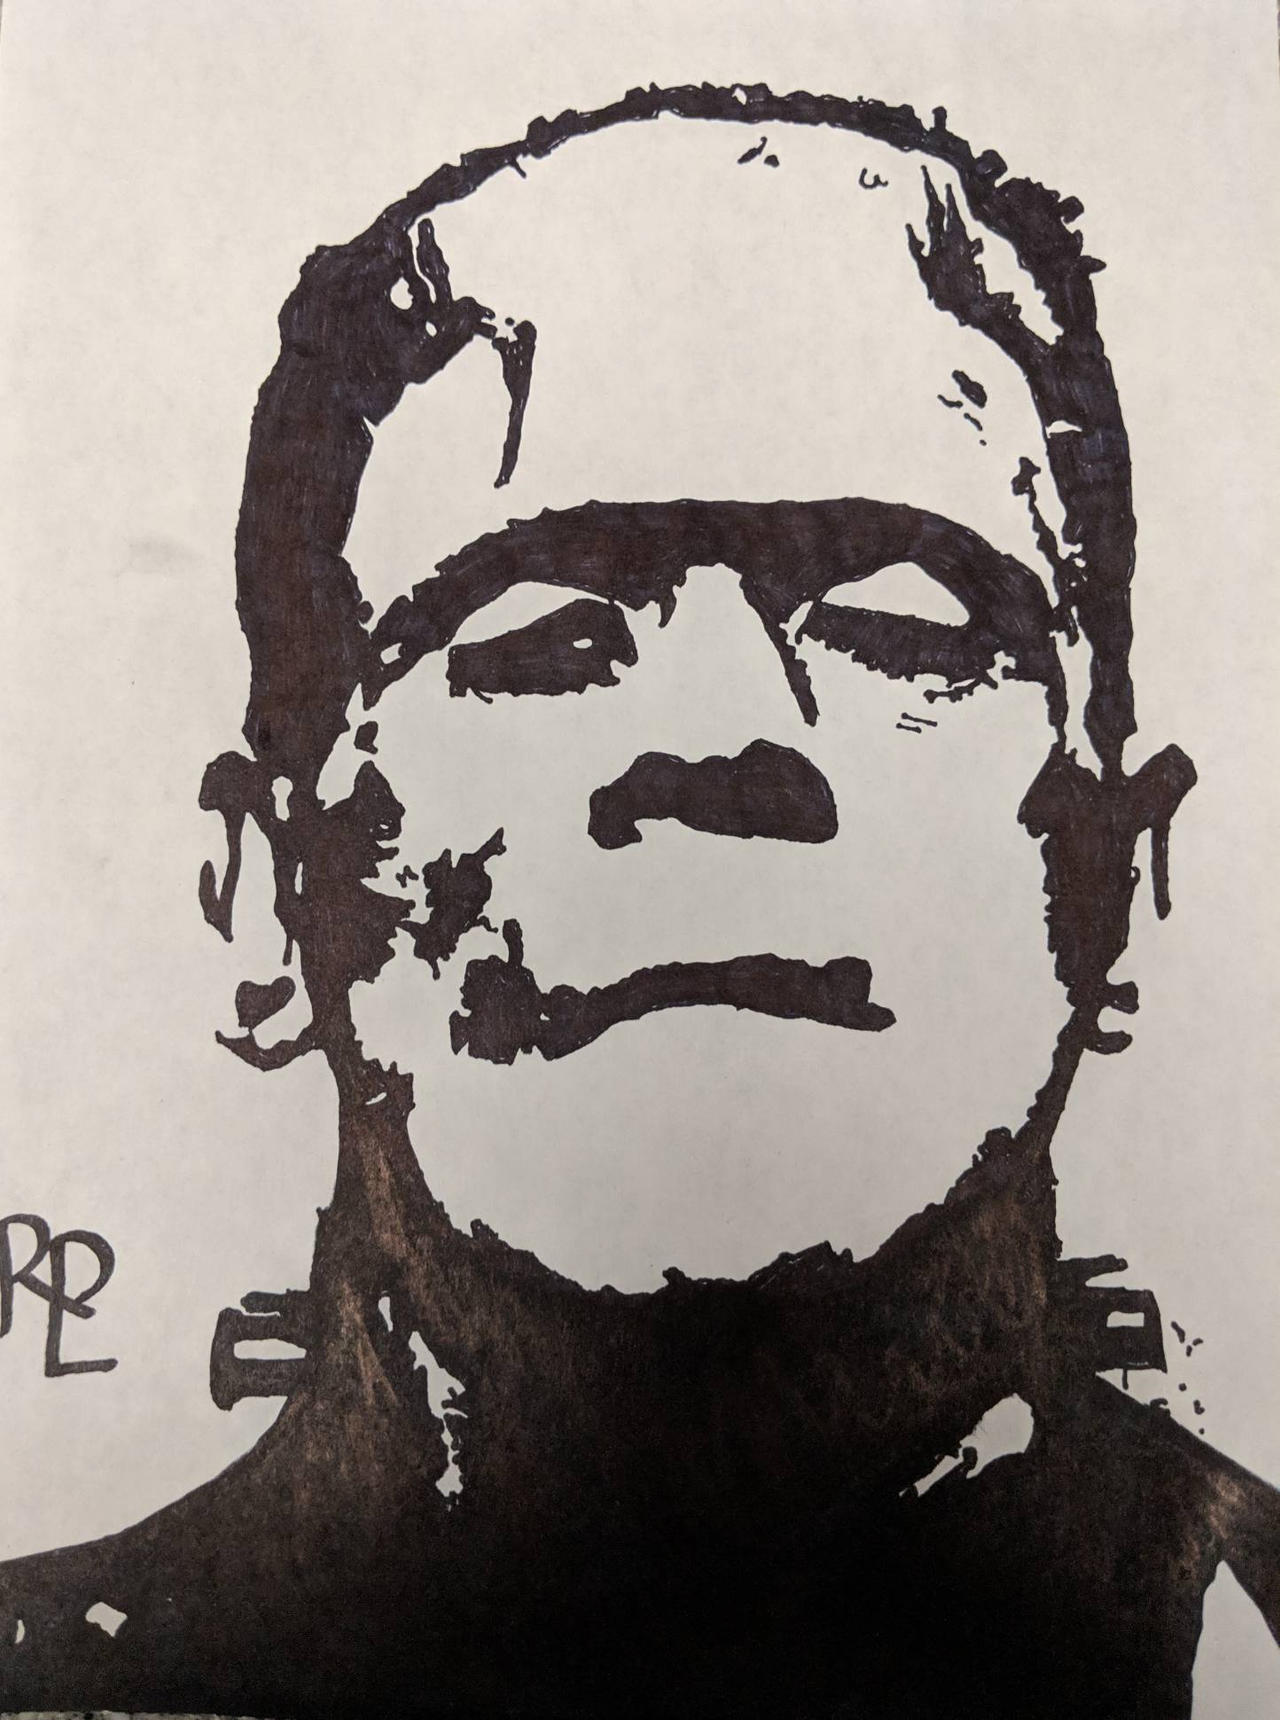 Boris Karloff's Frankenstein silhouette sketch by Rlopresti on DeviantArt